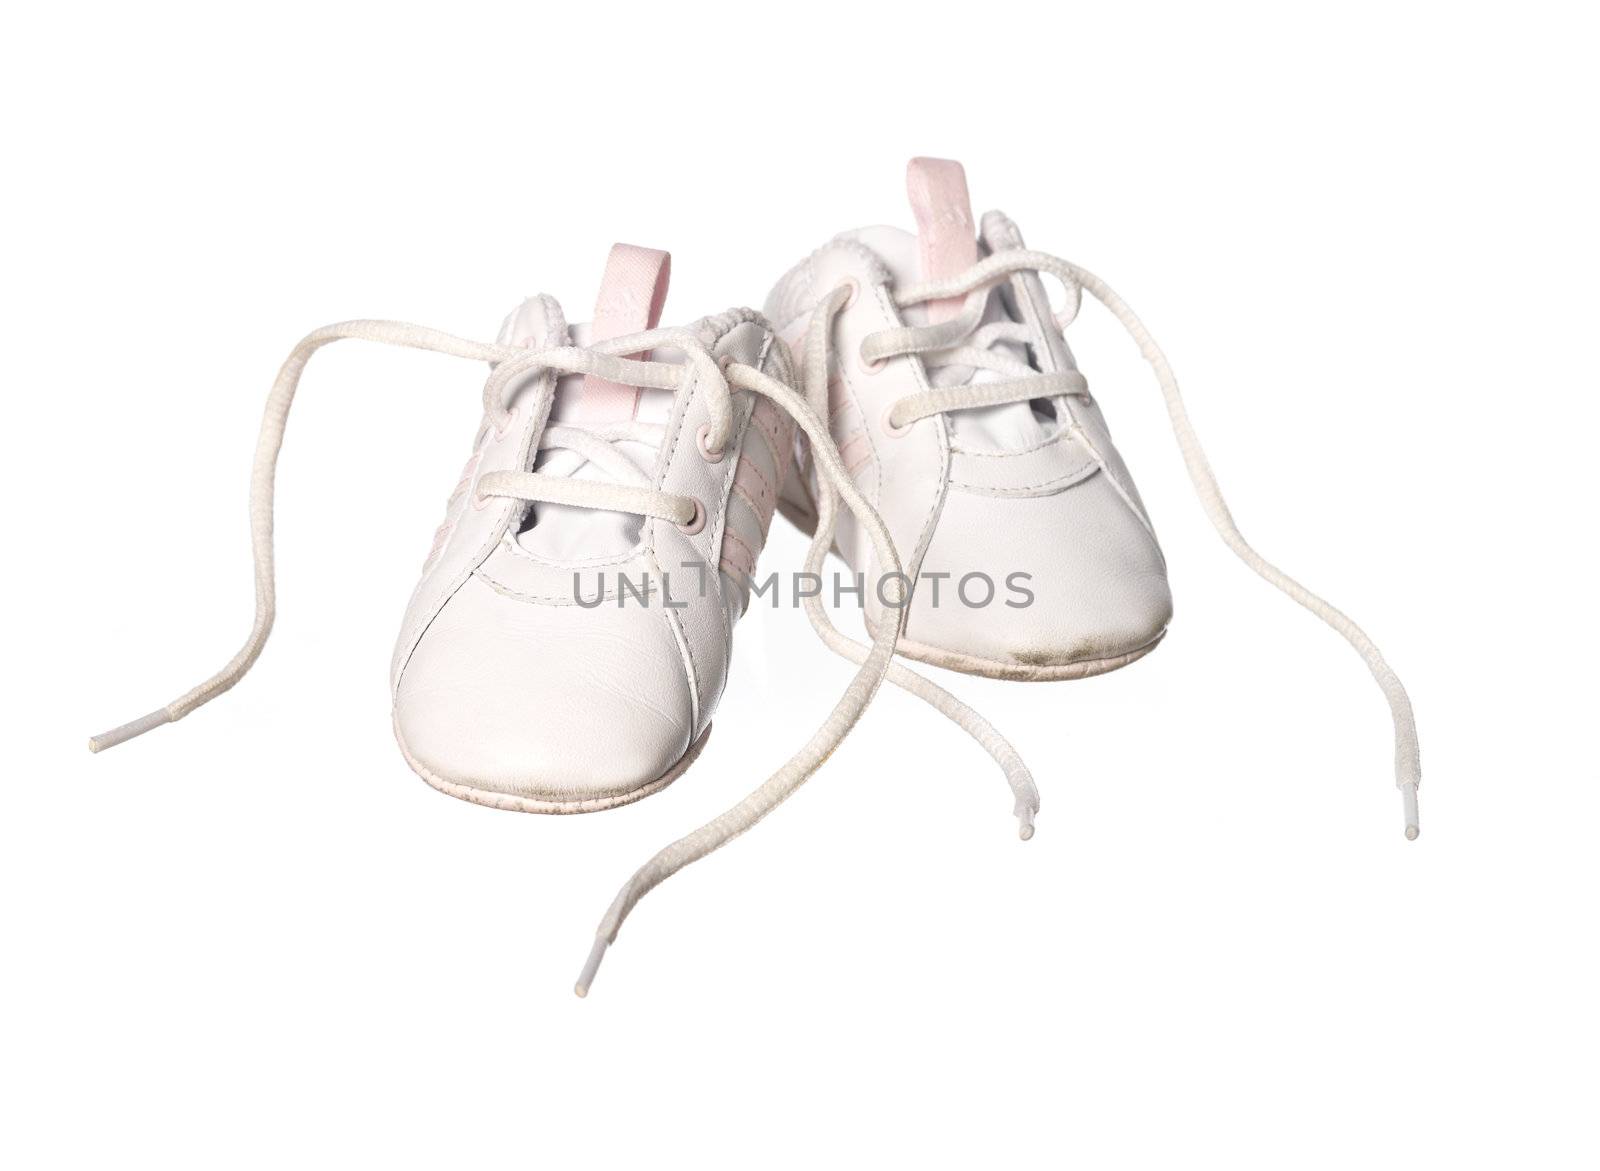 Babyshoes by gemenacom